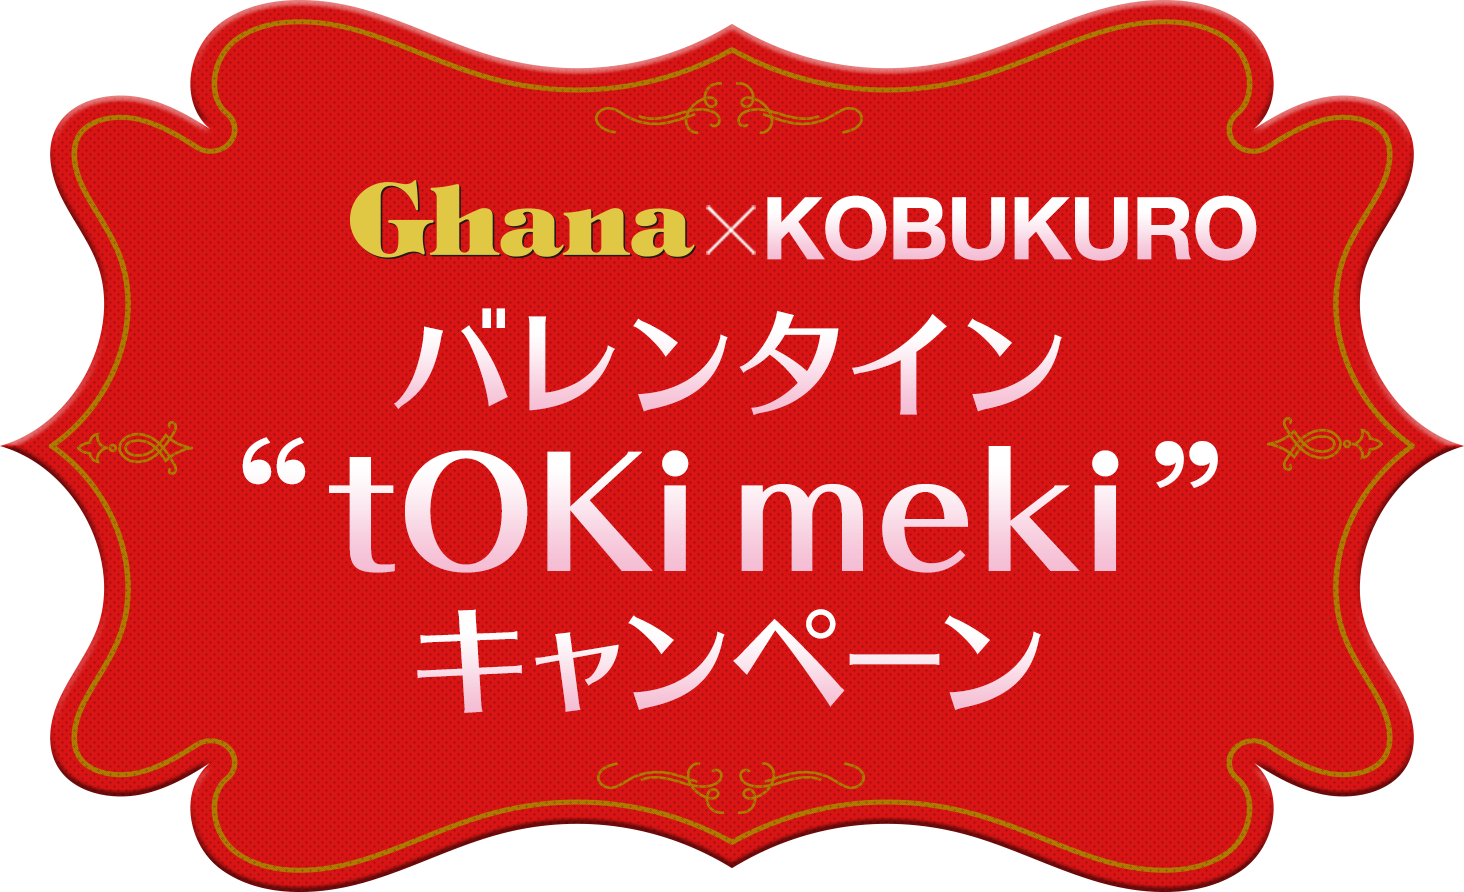 Ghana×KOBUKURO バレンタイン “tOKi meki” キャンペーン